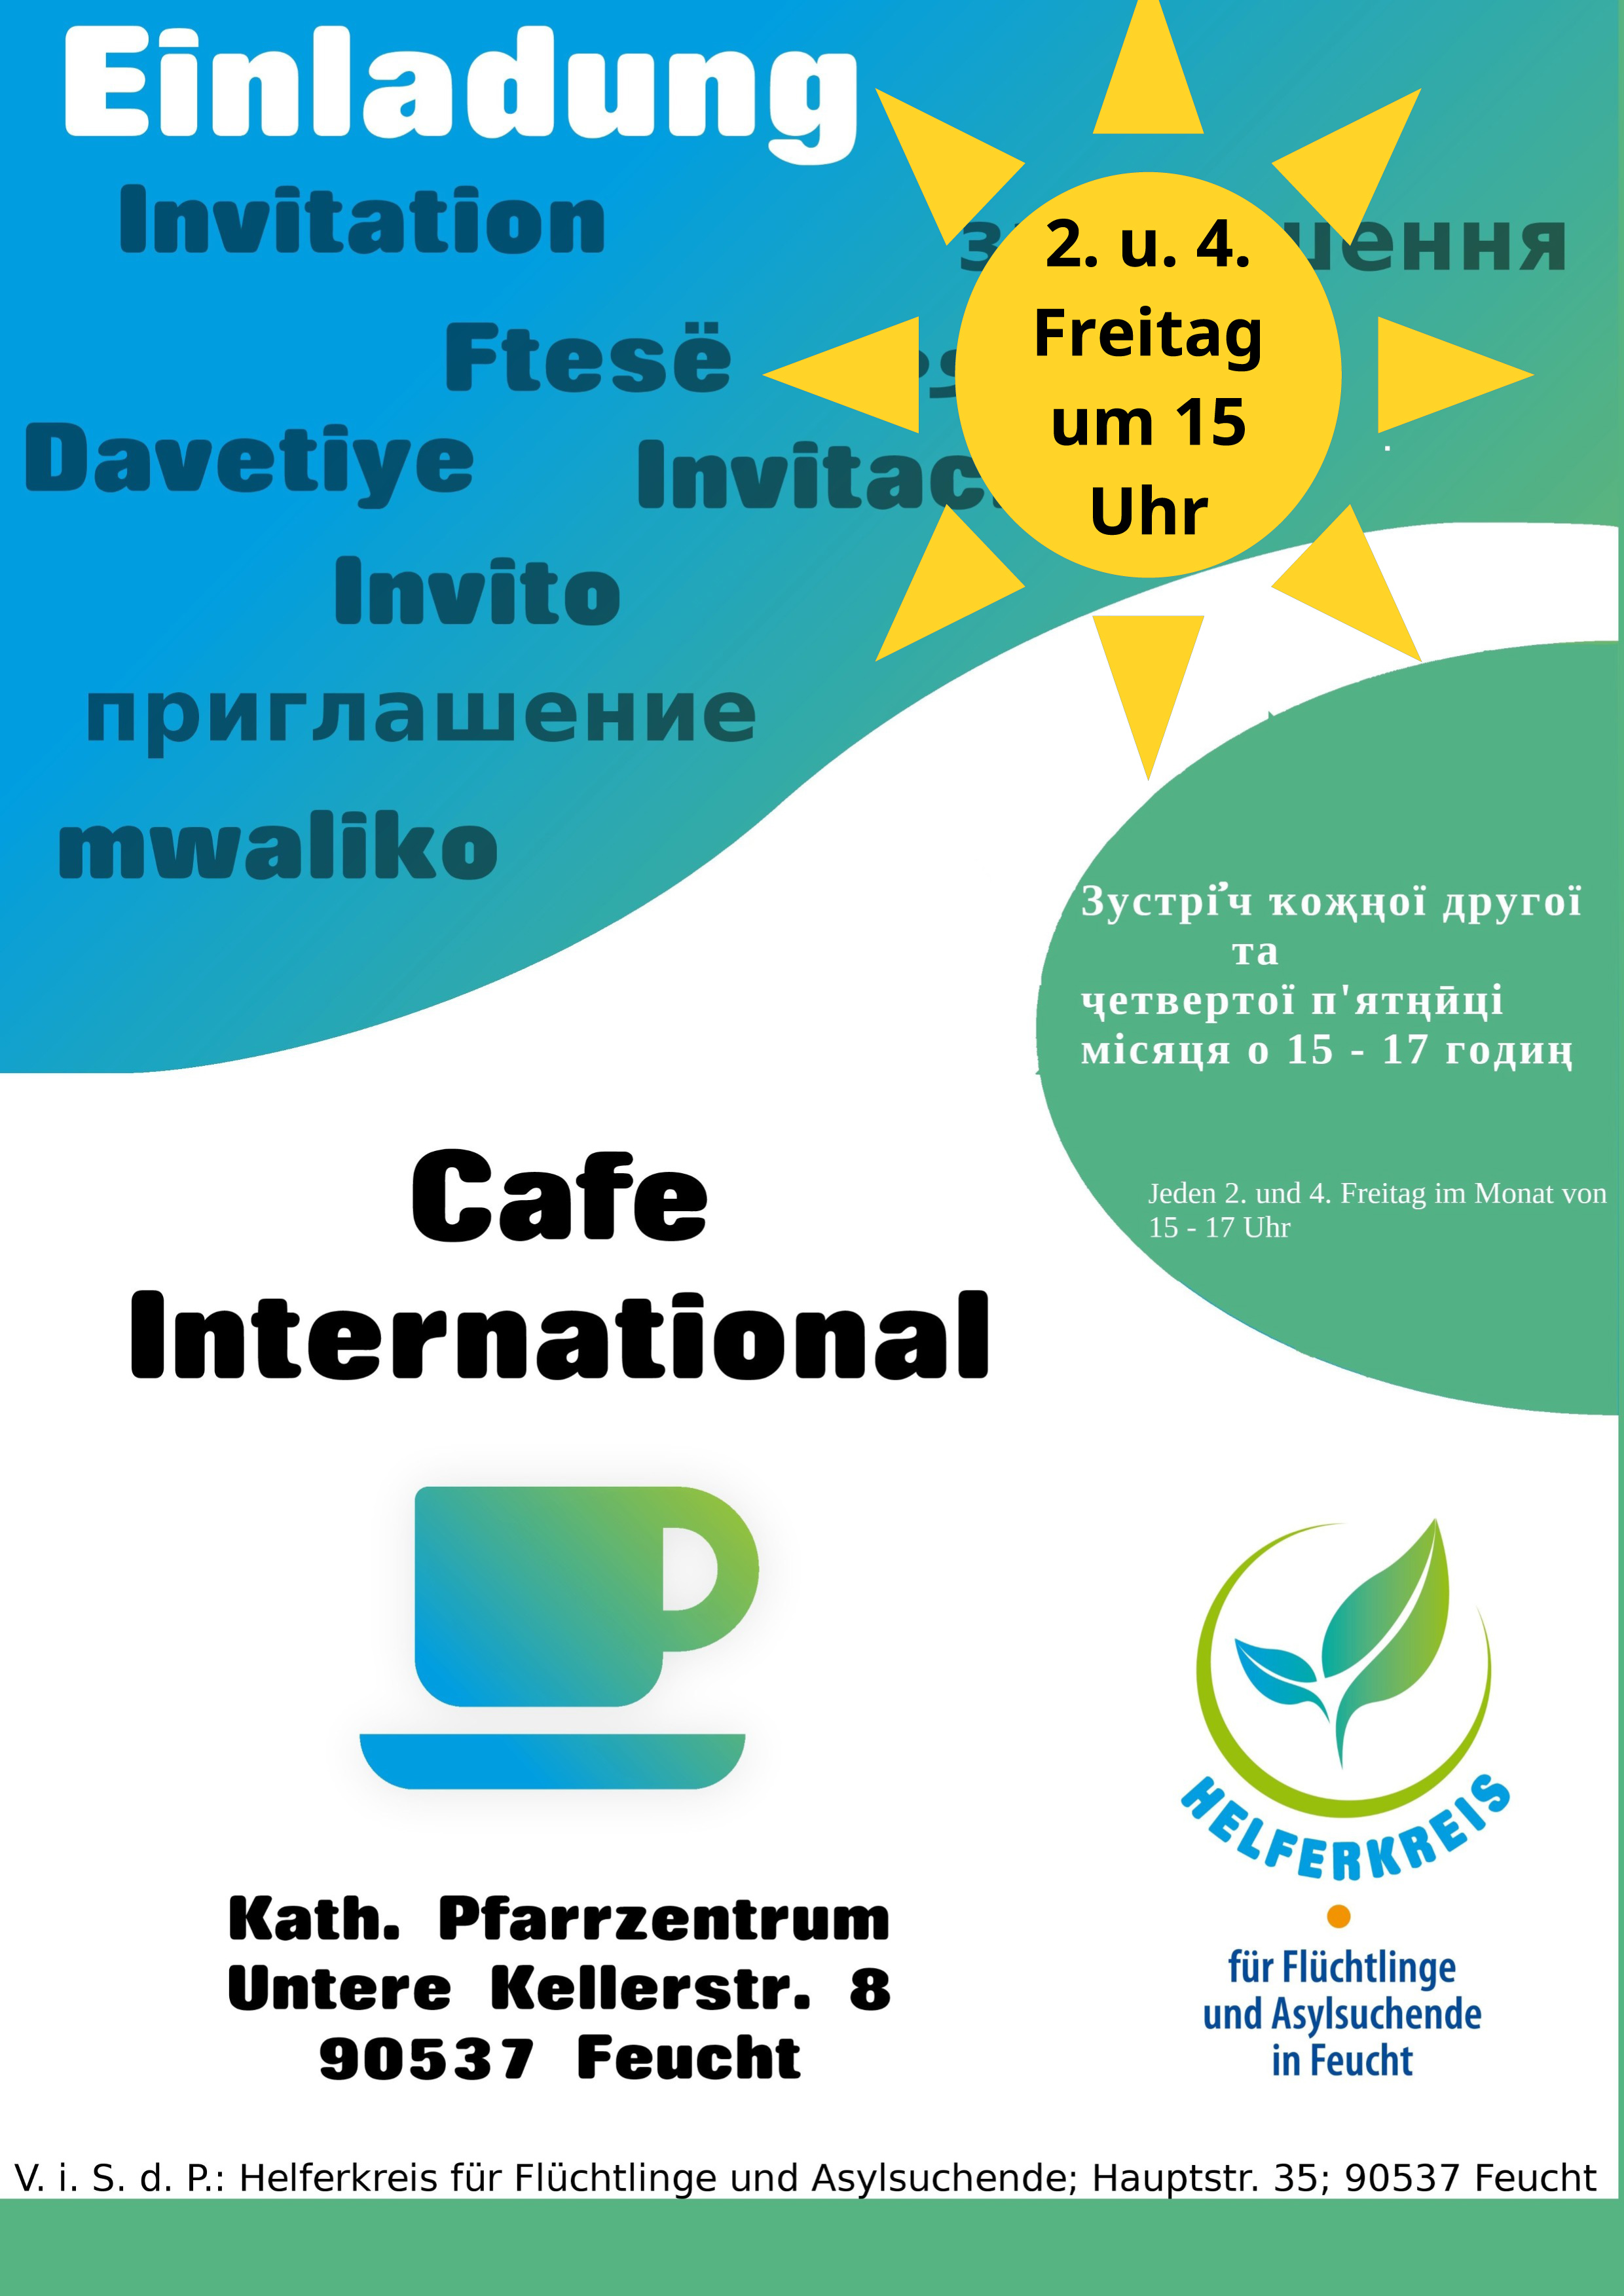 Eilnadung zum Cafe Interantional am 10. Juni um 15 Uhr ins katholische Pfarrzentrum 